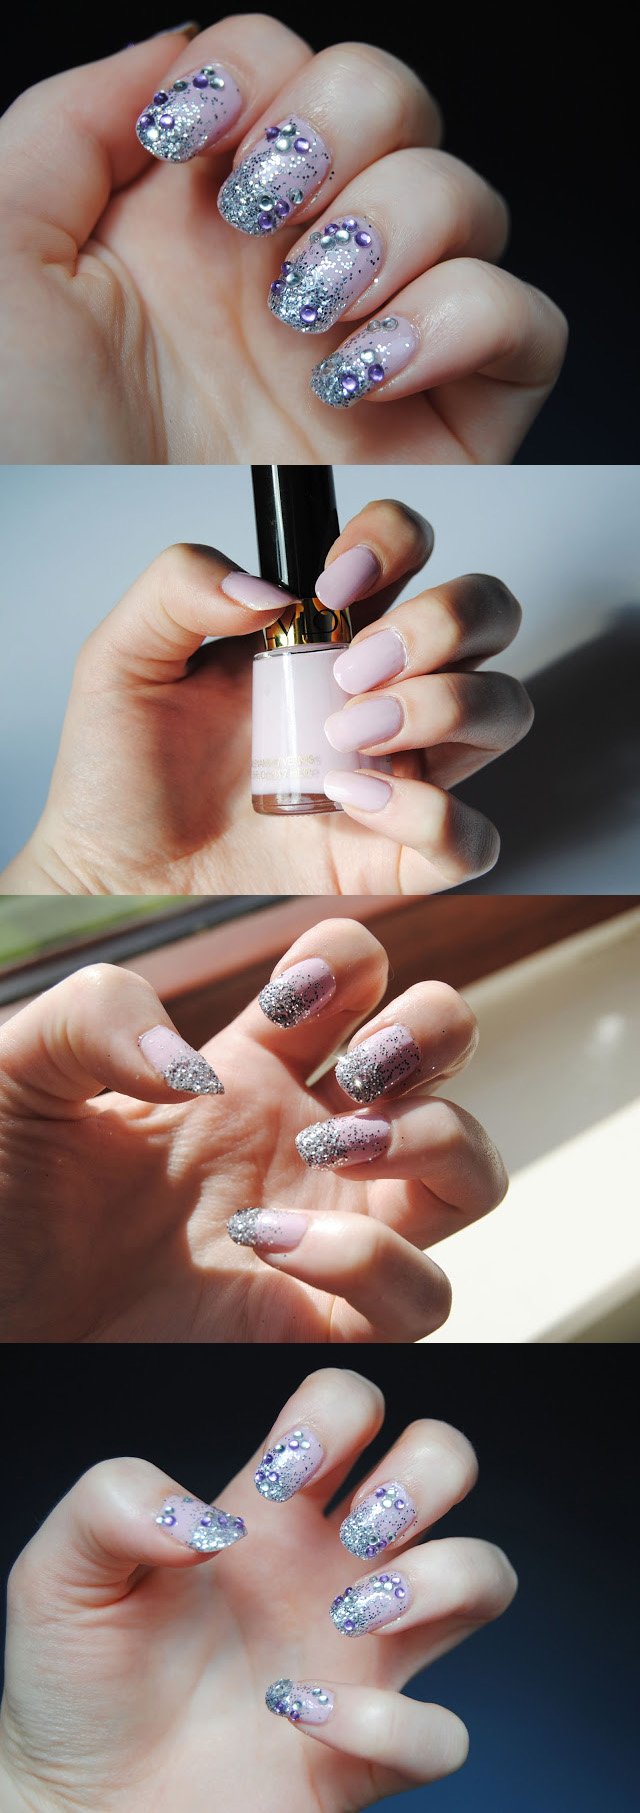 Lilac jewel nails